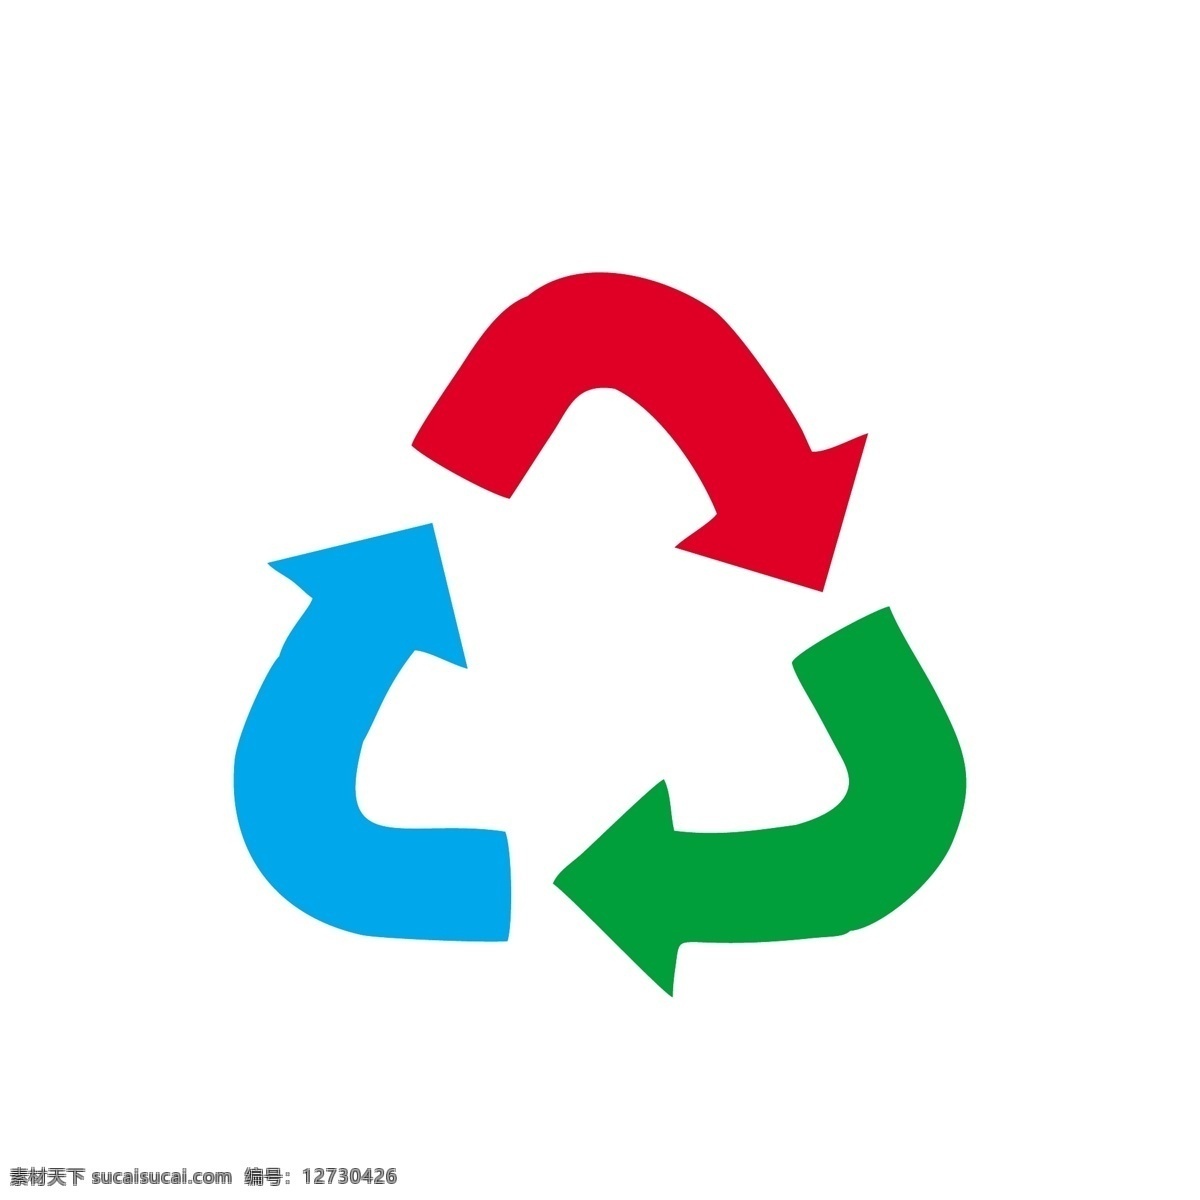 一个 绿色 可循 环 图标 一个图标 回收 循环利用 环保 重复利用 立体化